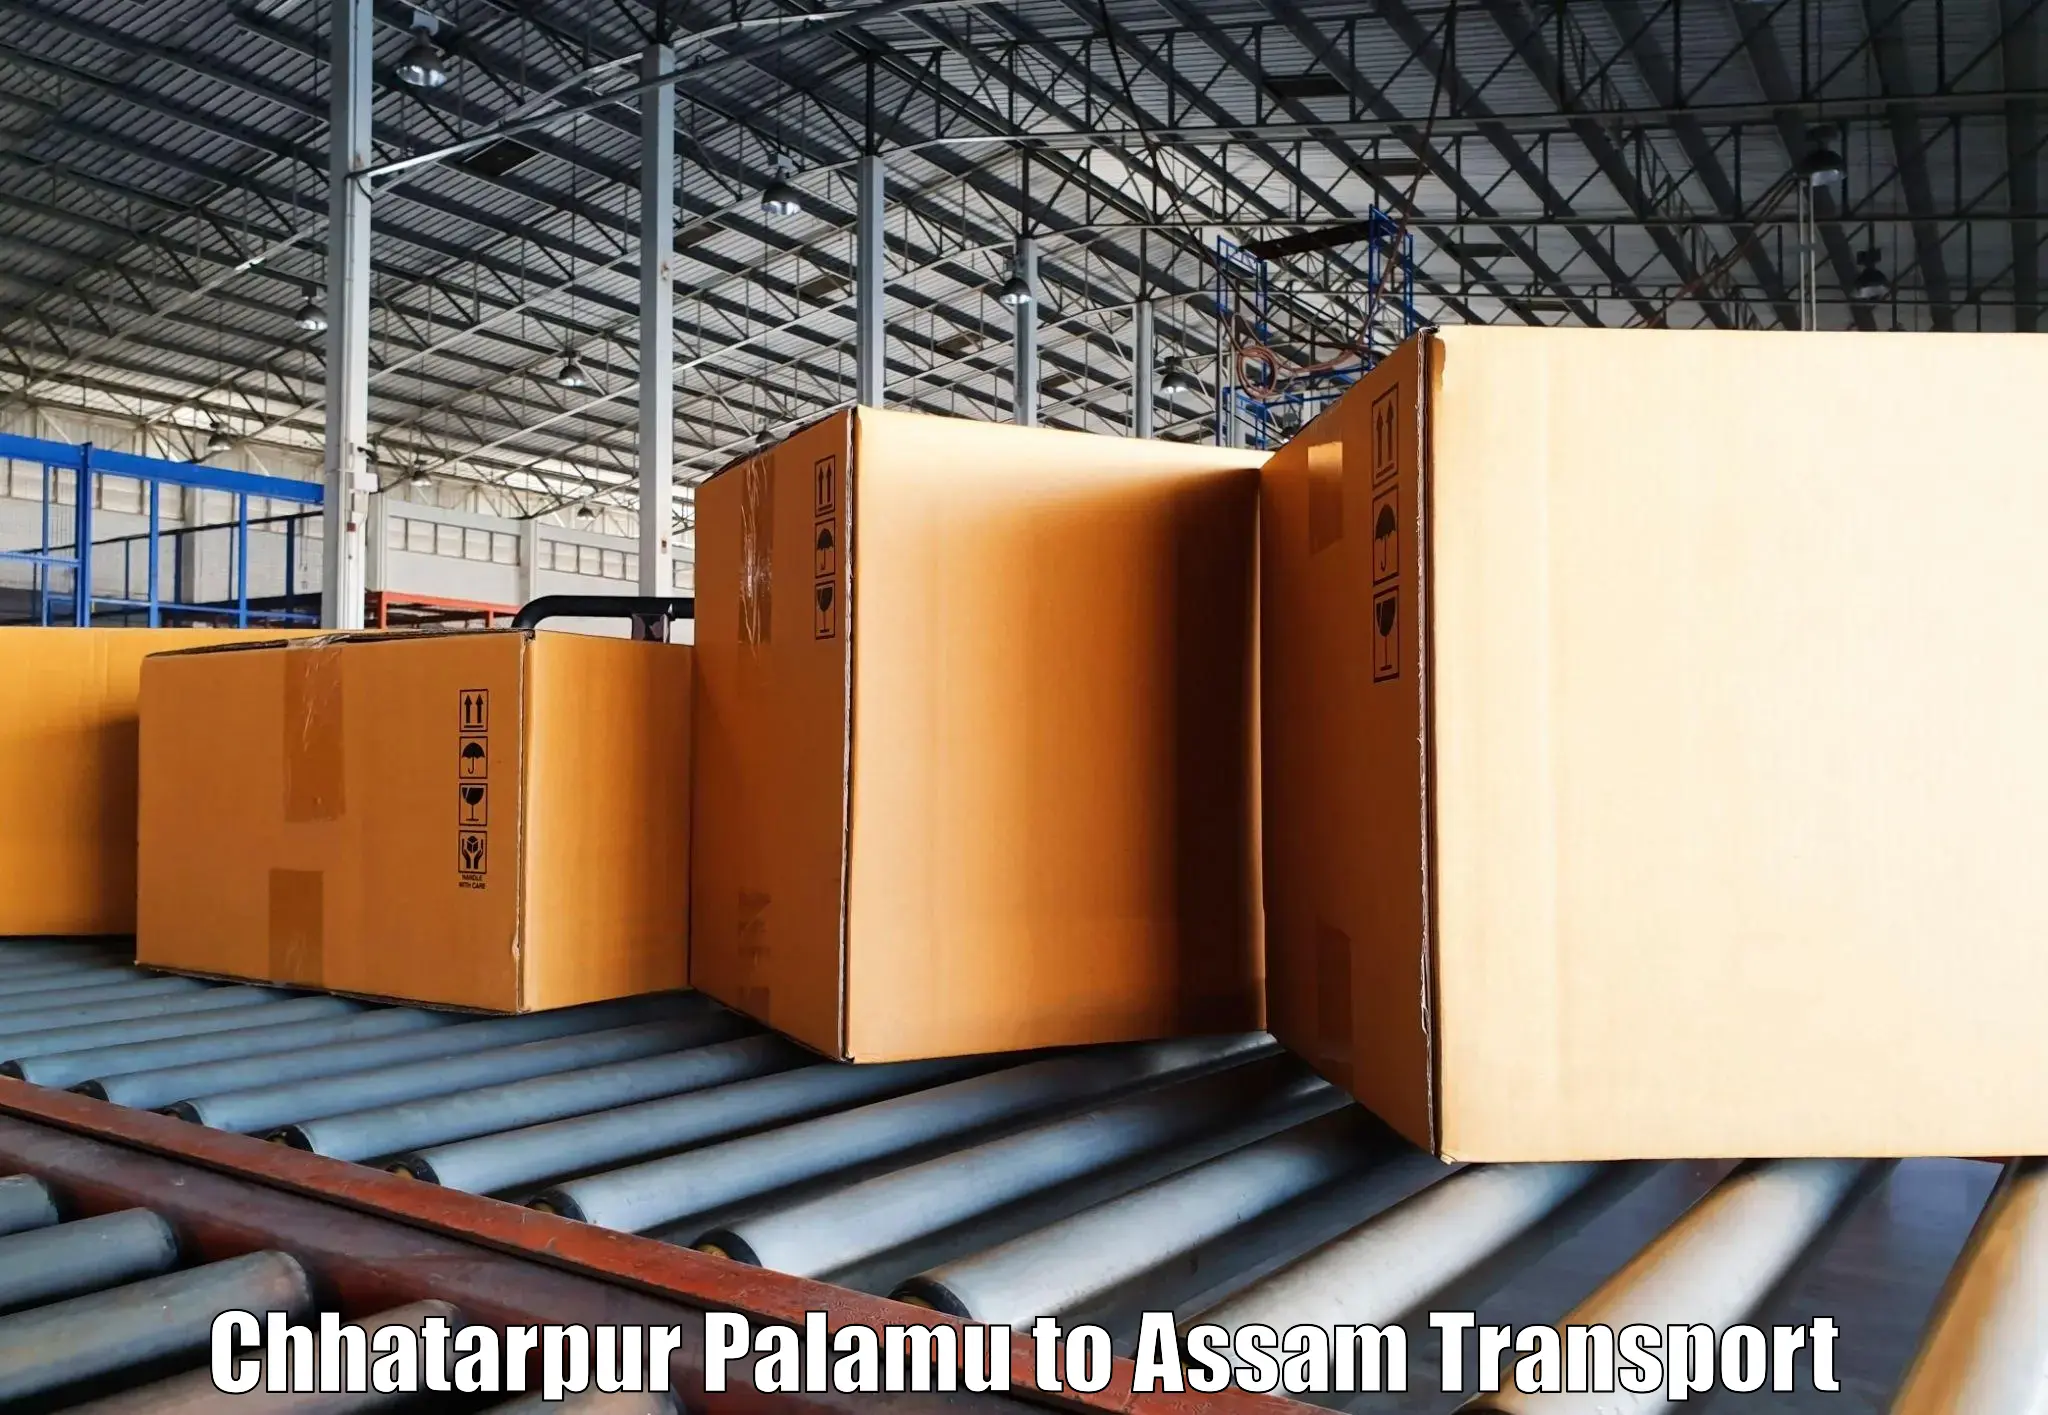 Luggage transport services Chhatarpur Palamu to Hojai